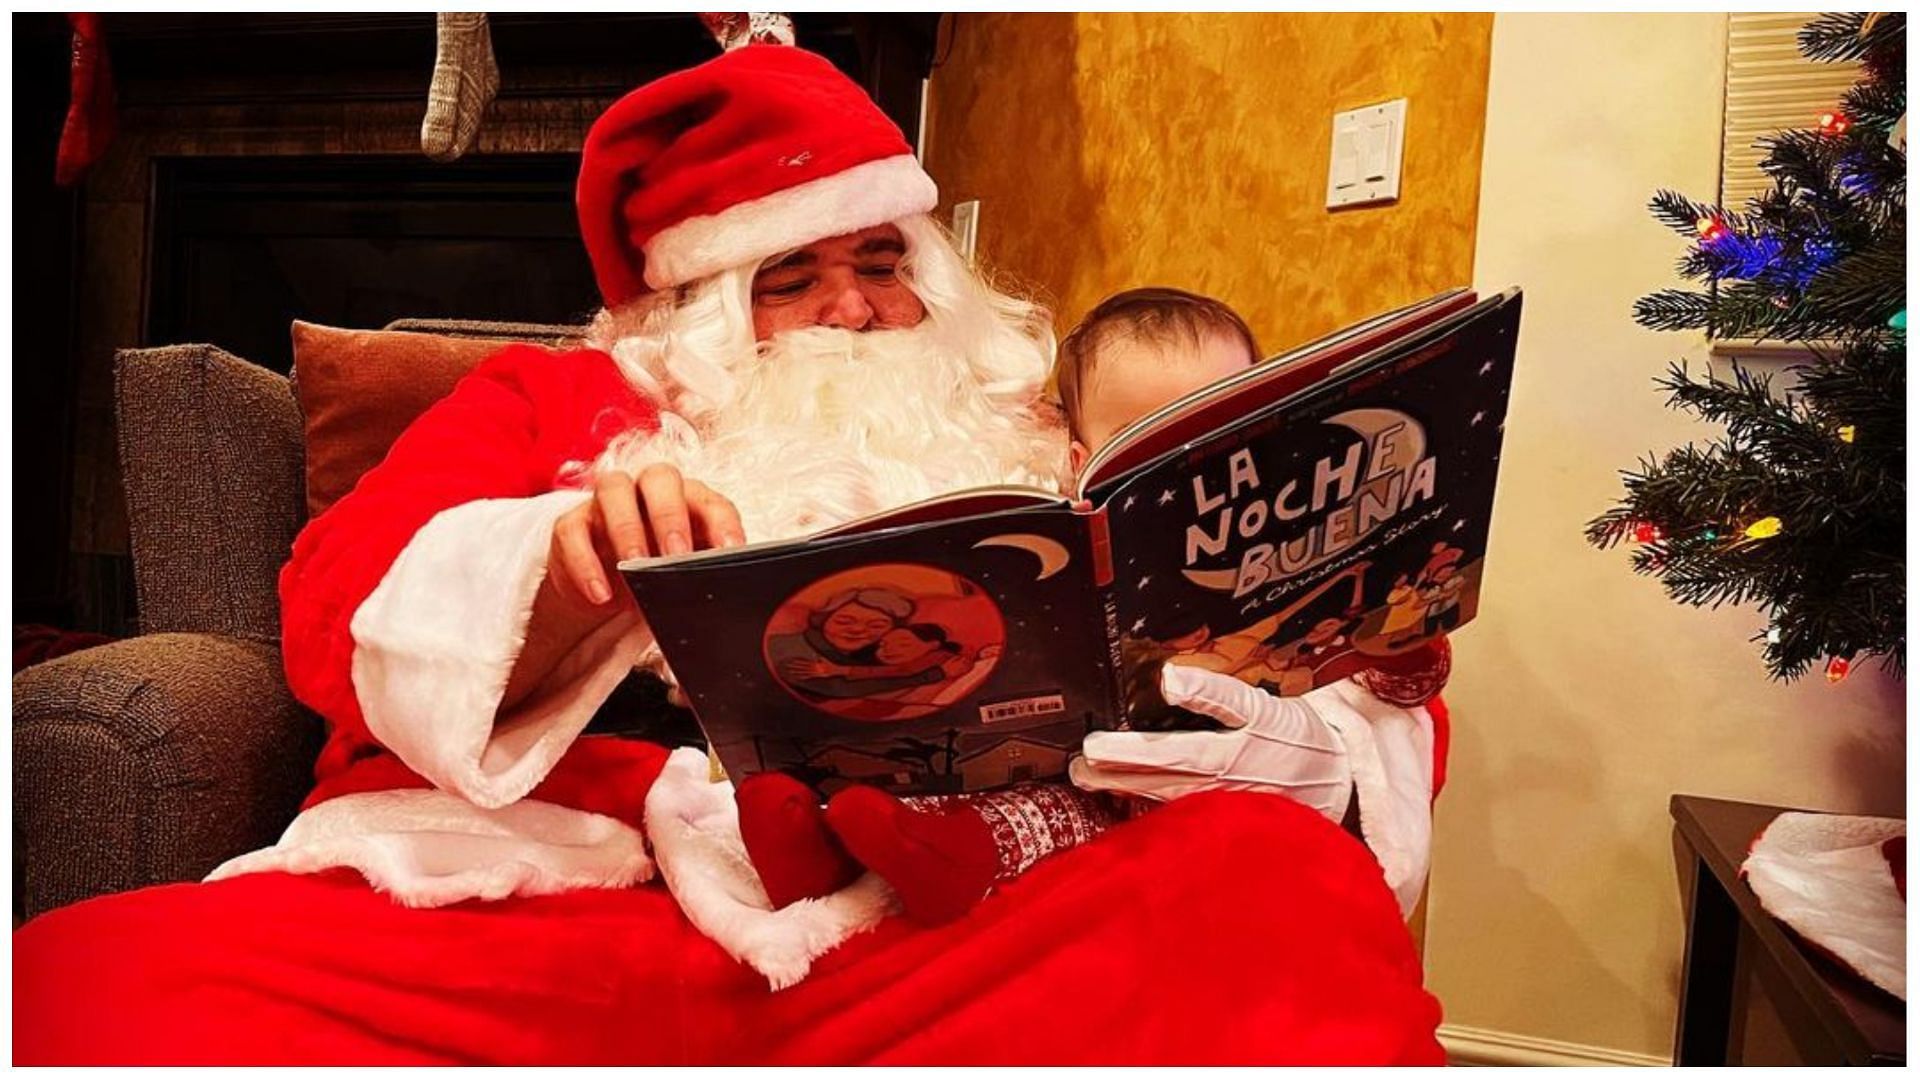 Jorge Garcia dressed up as Santa. (Image via Instagram @pronouncedhorhay)